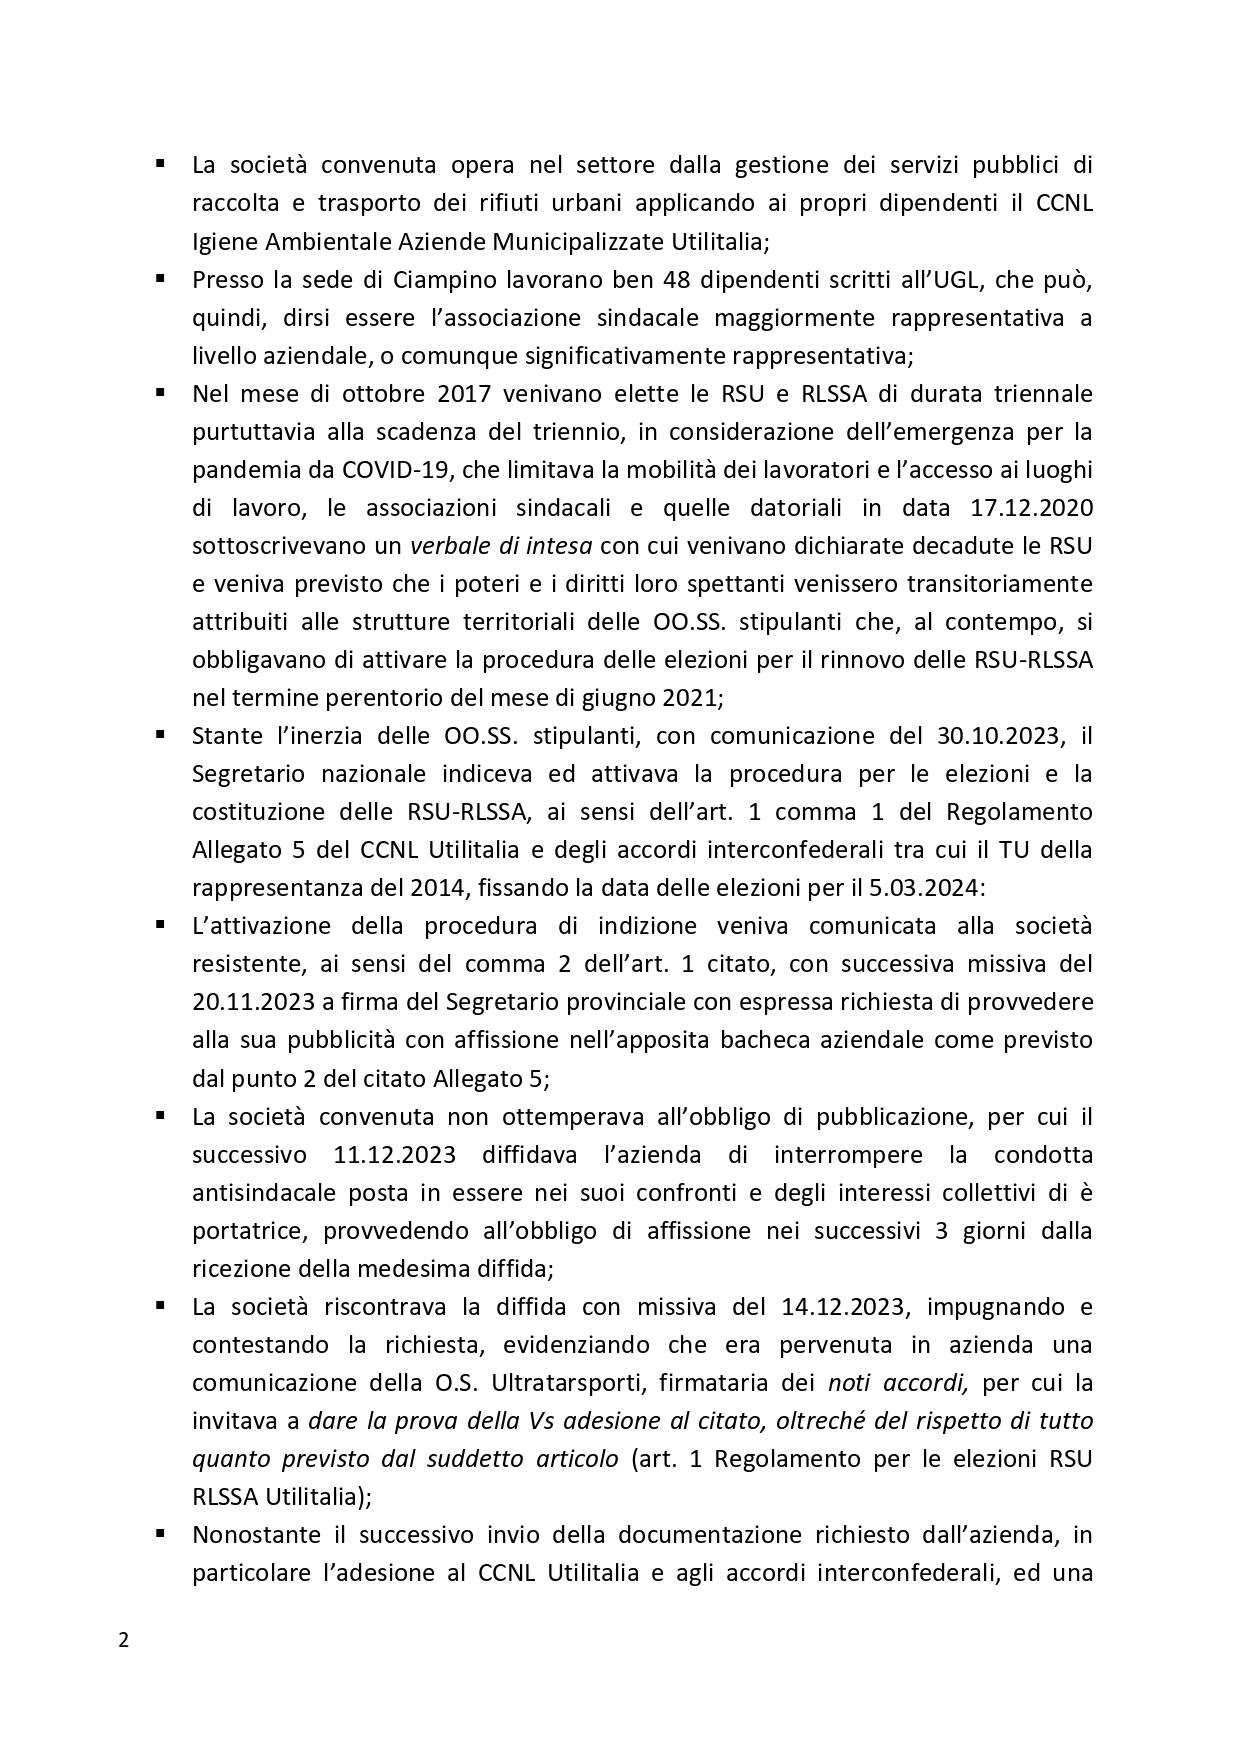 Decreto UGL Ambiente 1 page 0002